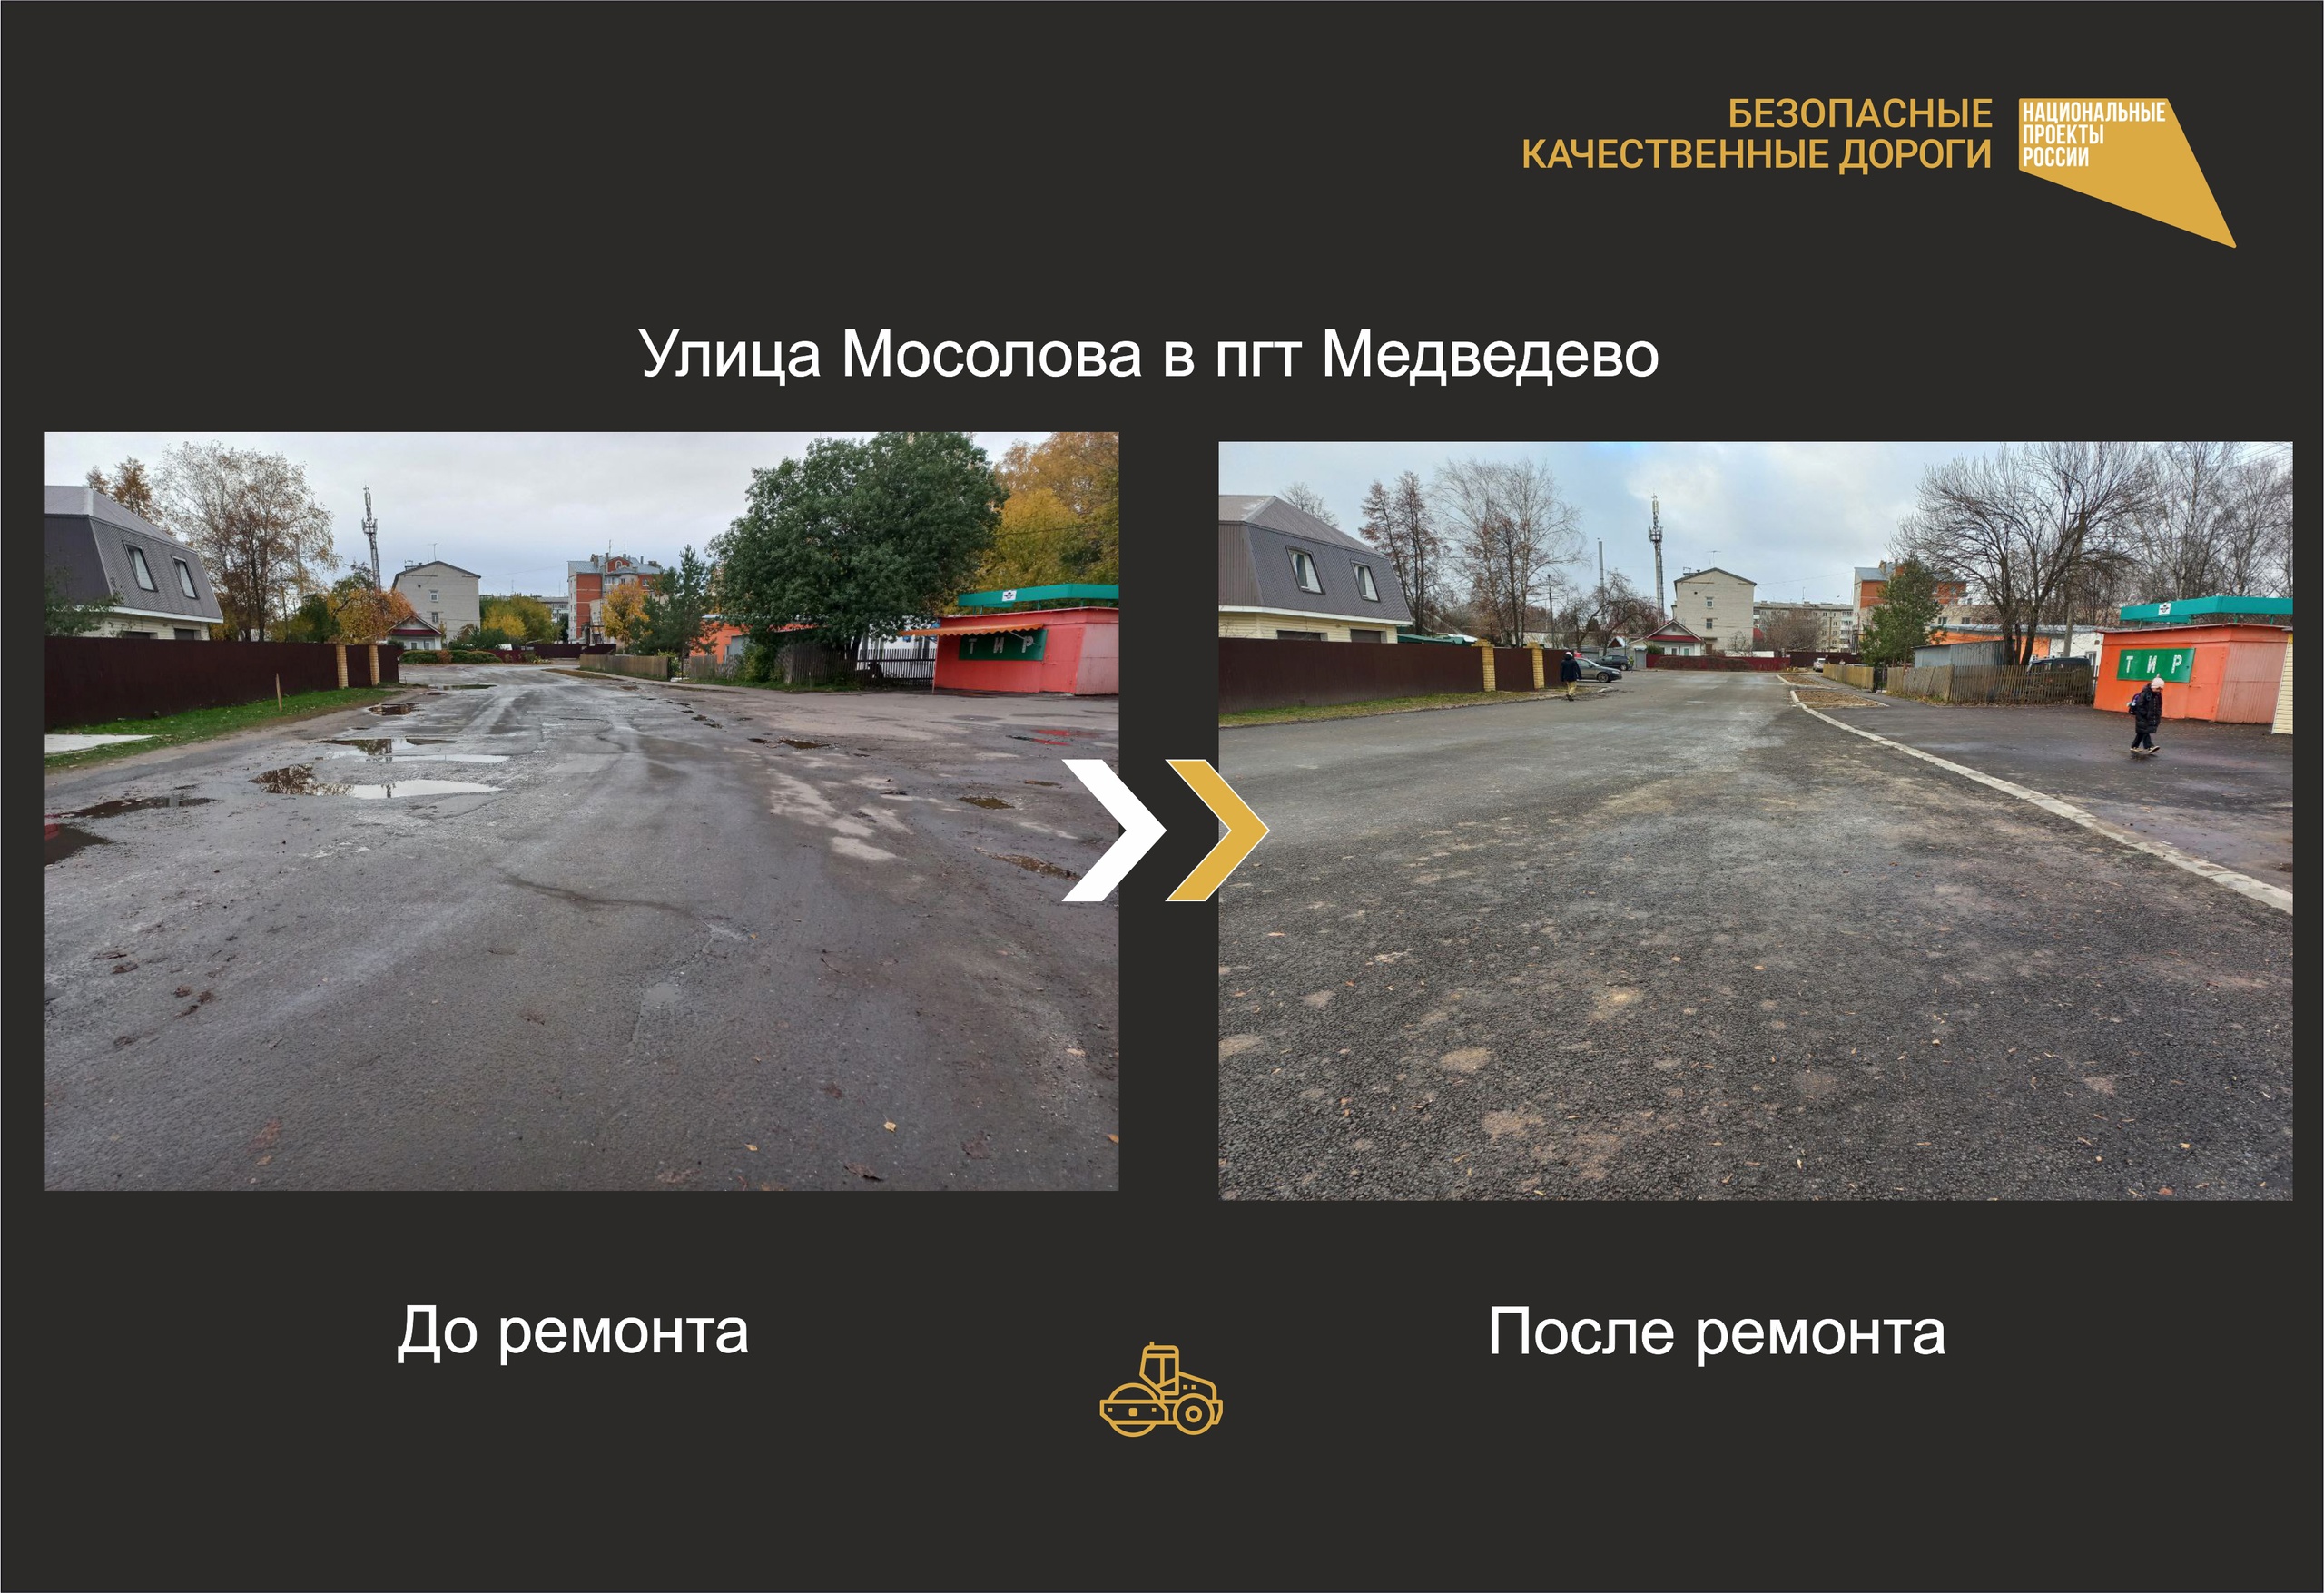 В поселке Медведево досрочно отремонтировали улицу Мосолова 